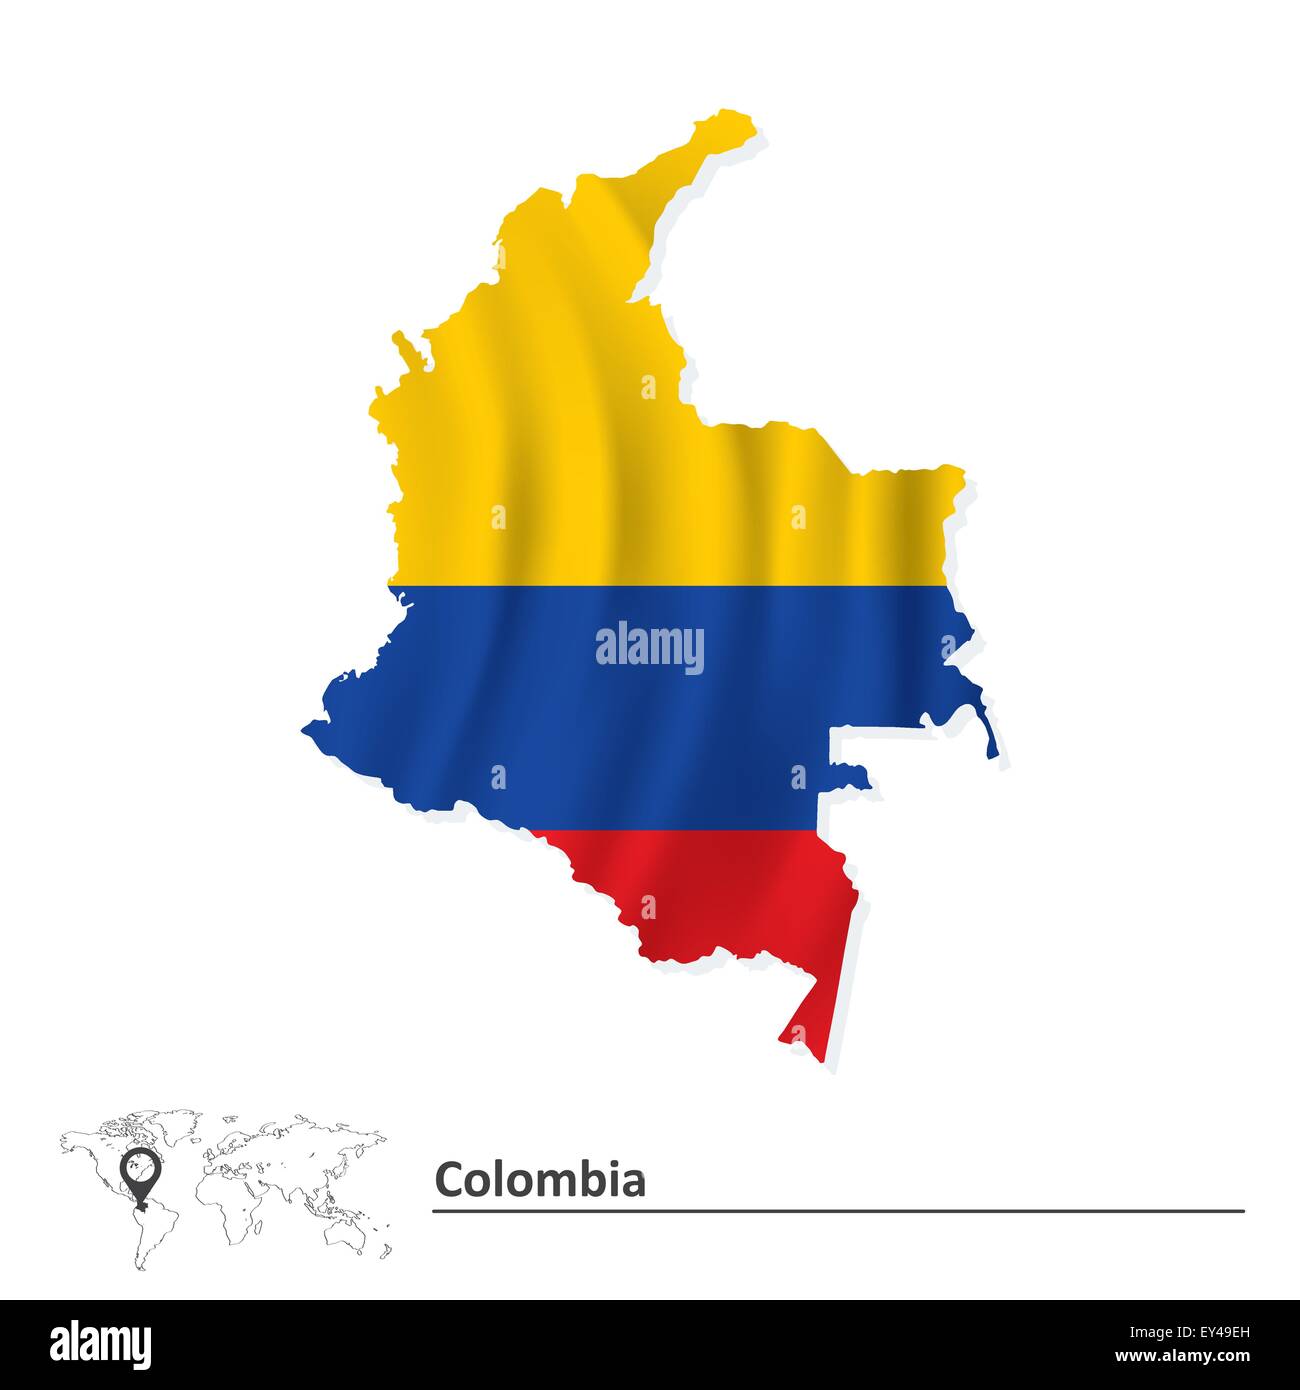 Mapa Colombia Ilustracion Detallada De Un Mapa De Colombia Con Bandera